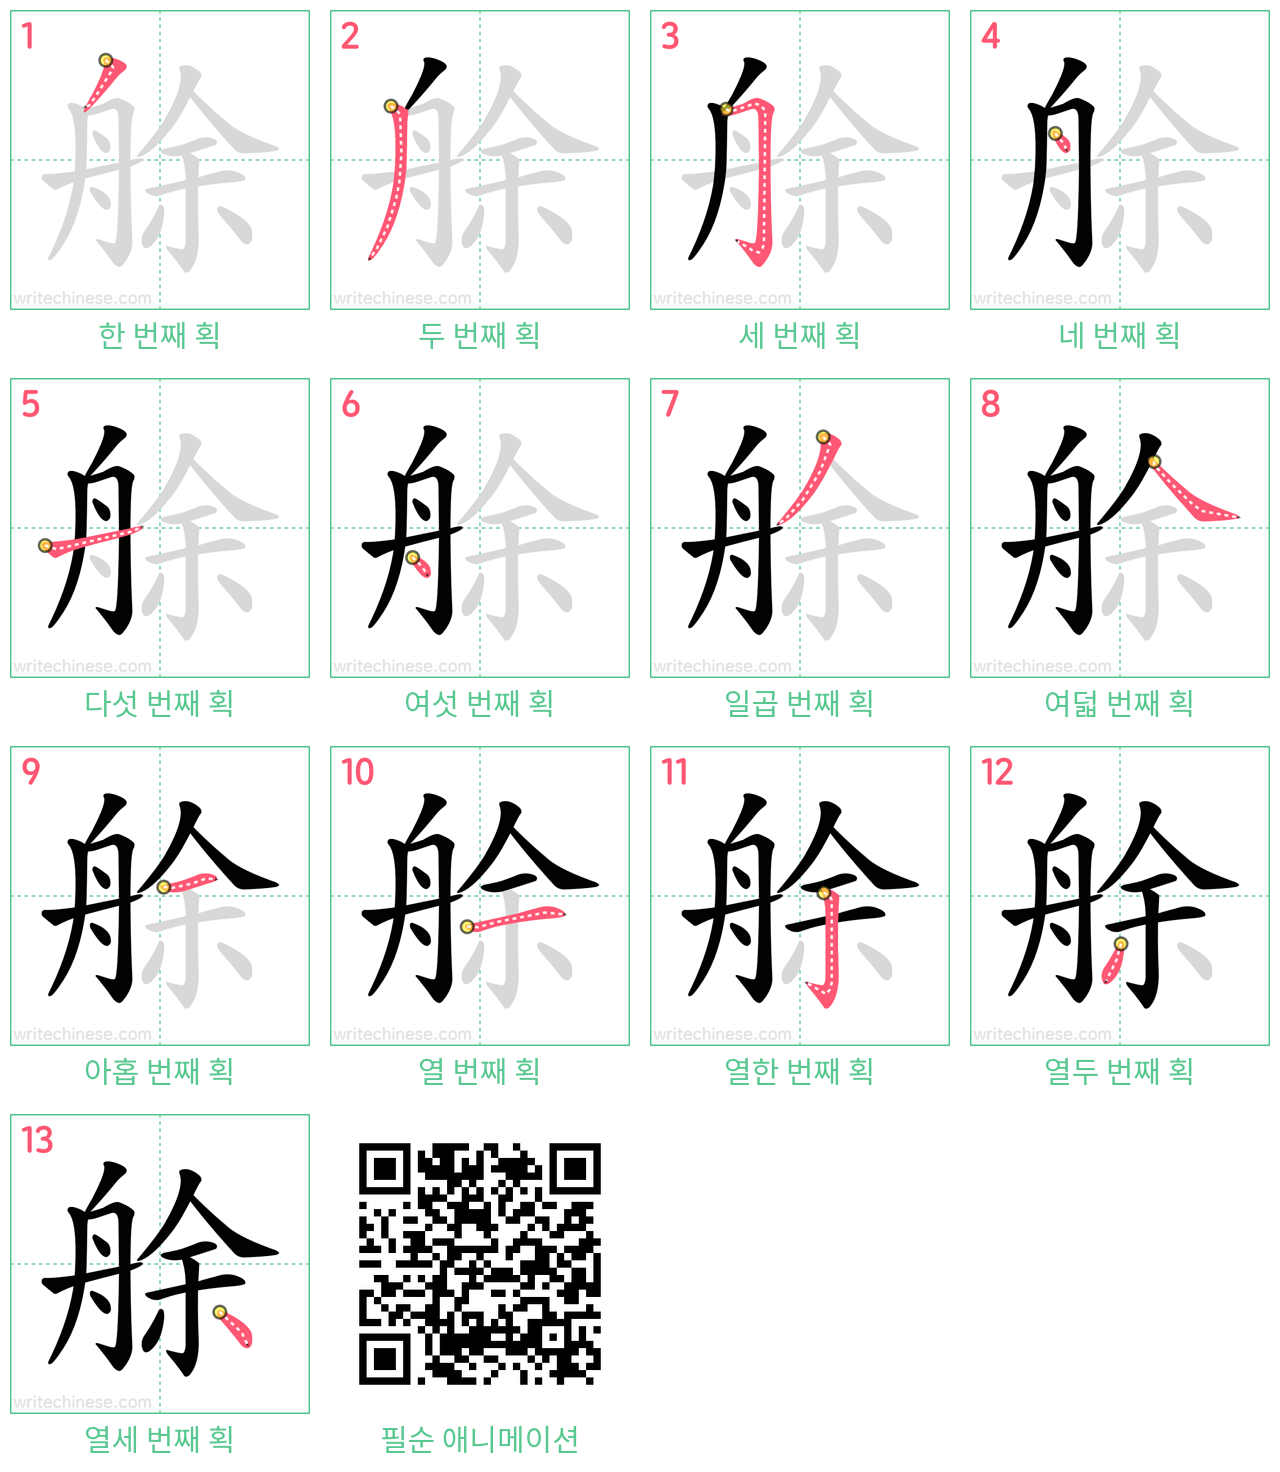 艅 step-by-step stroke order diagrams